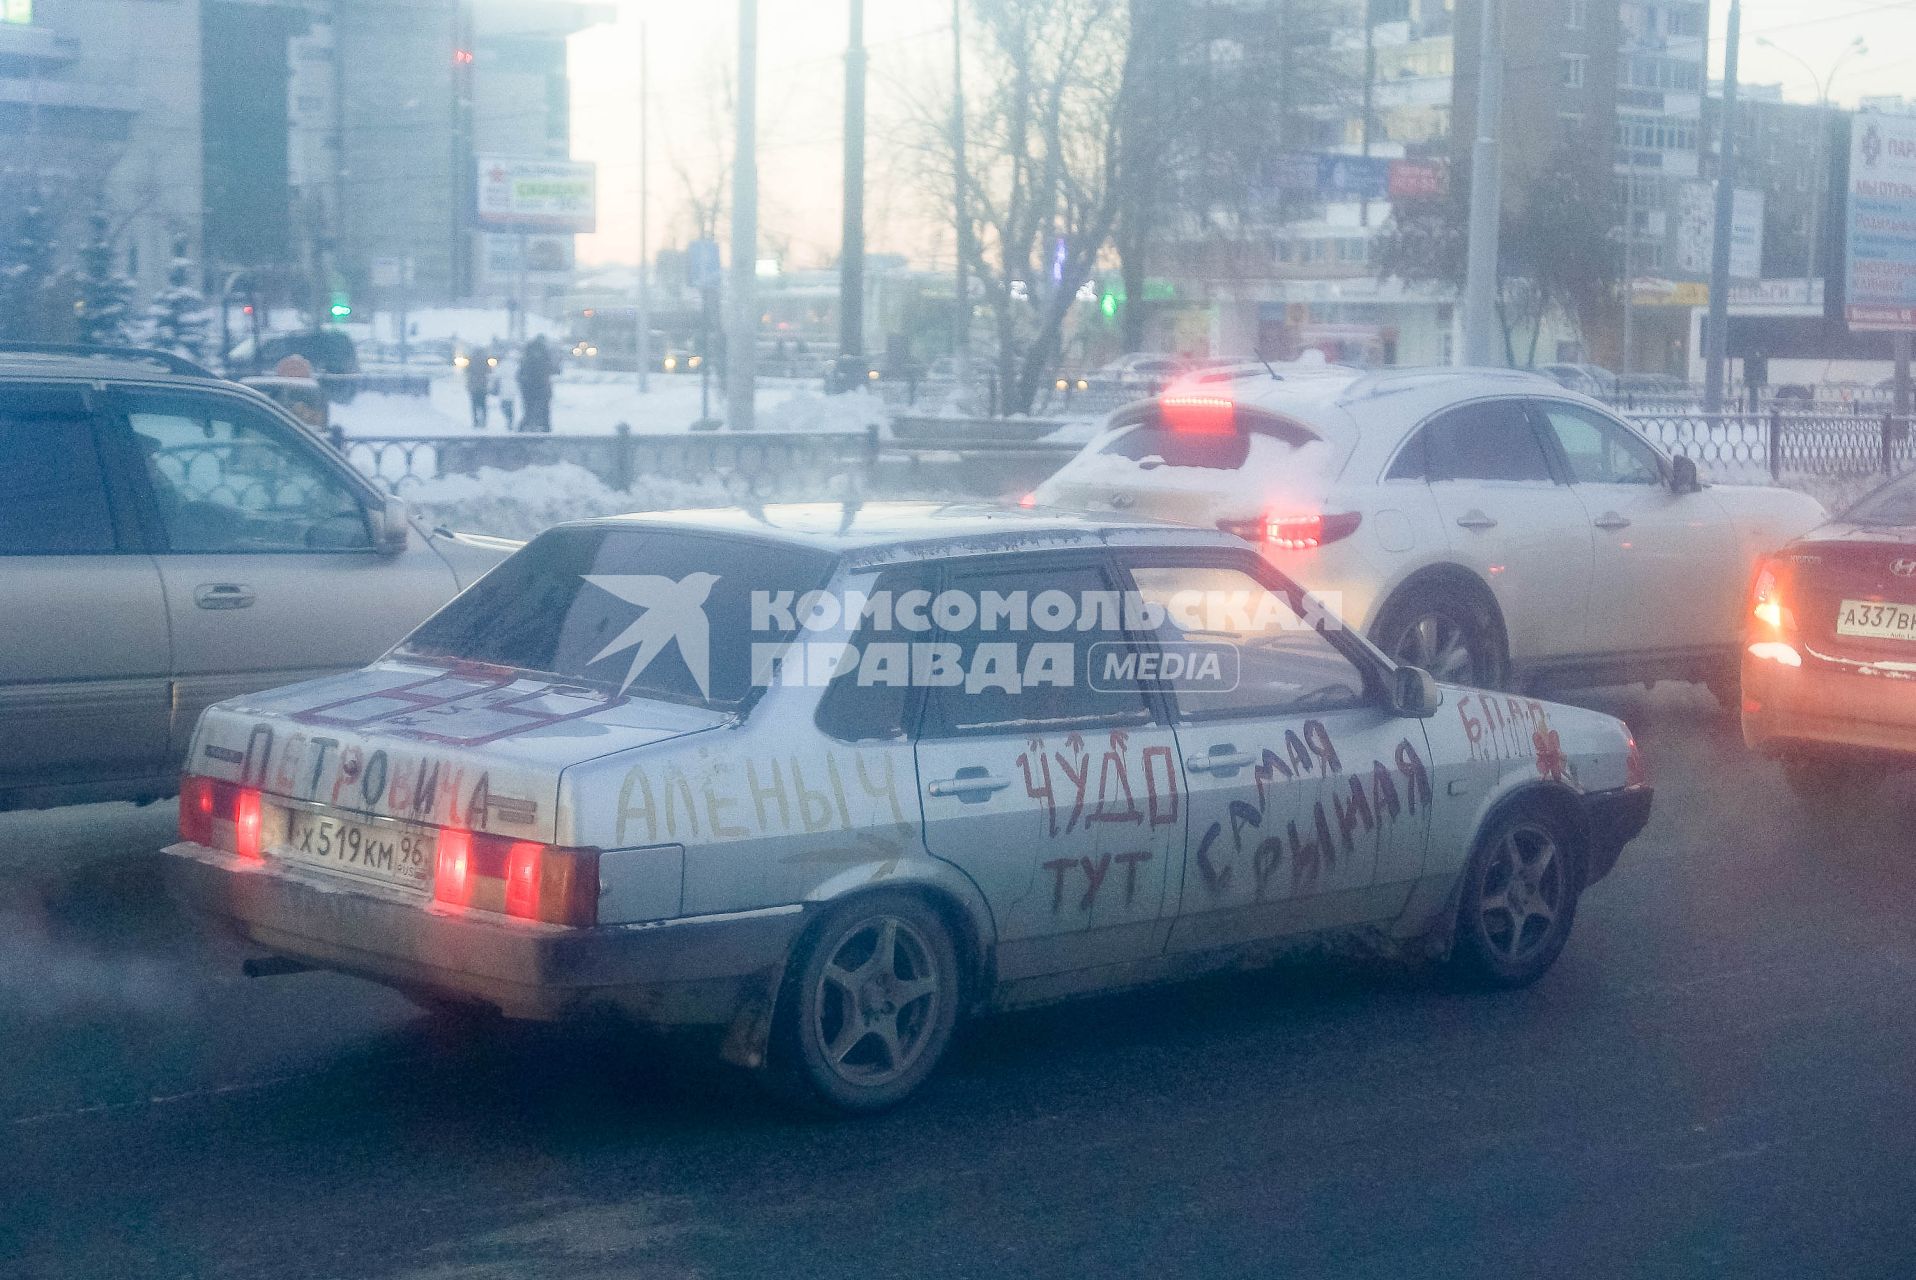 Екатеринбург. Разрисованный автомобиль на дороге